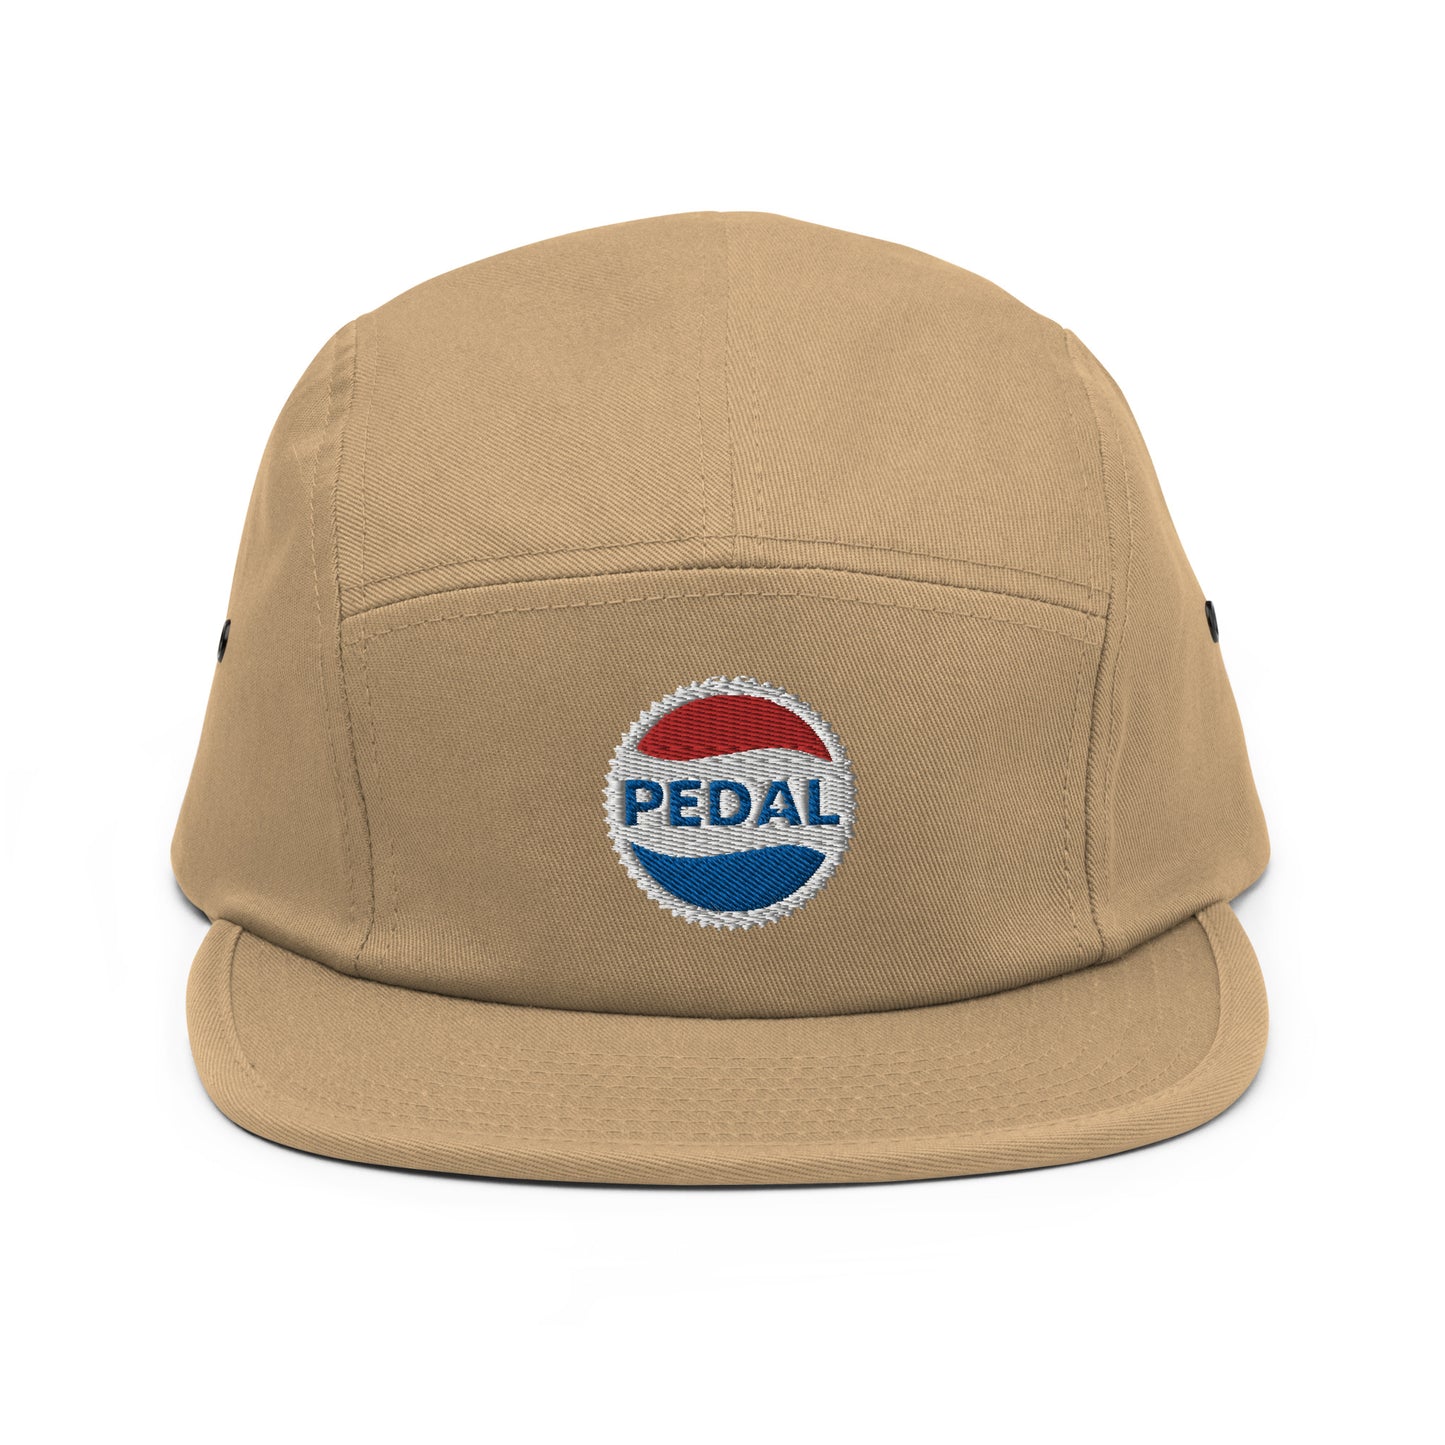 Pedal Camper Cap